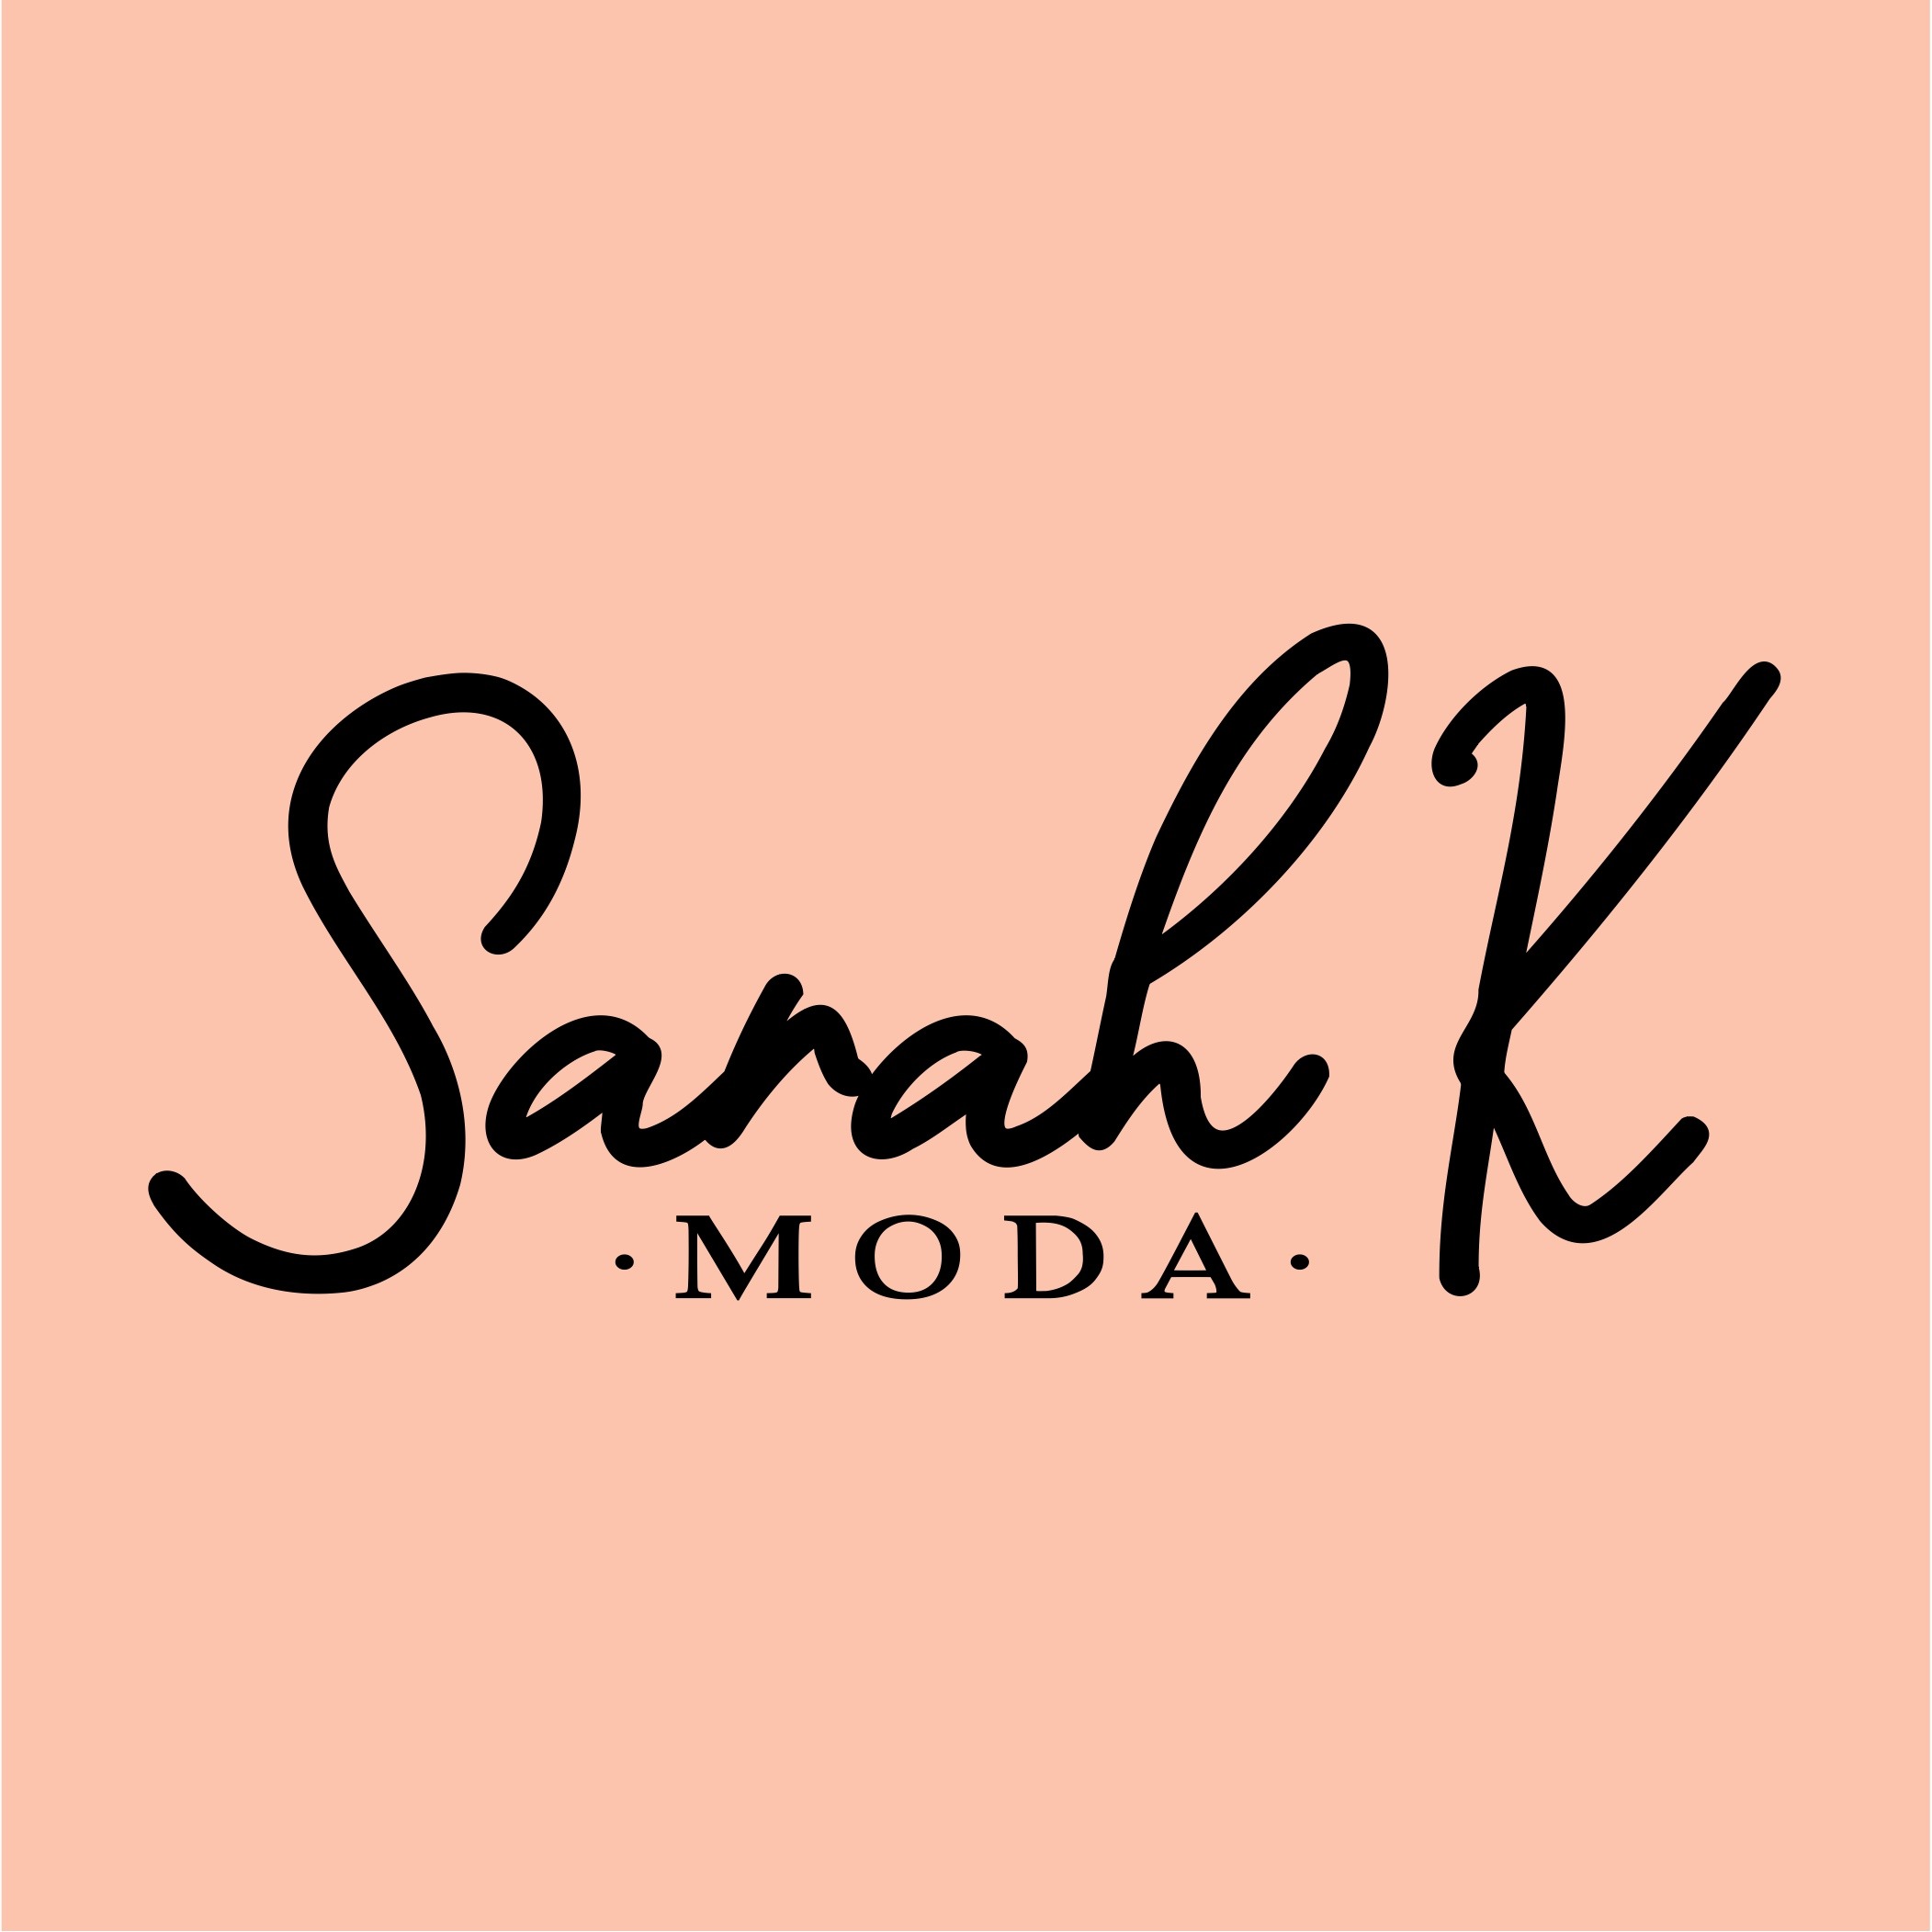 Sarah K Moda in Neumarkt in der Oberpfalz - Logo